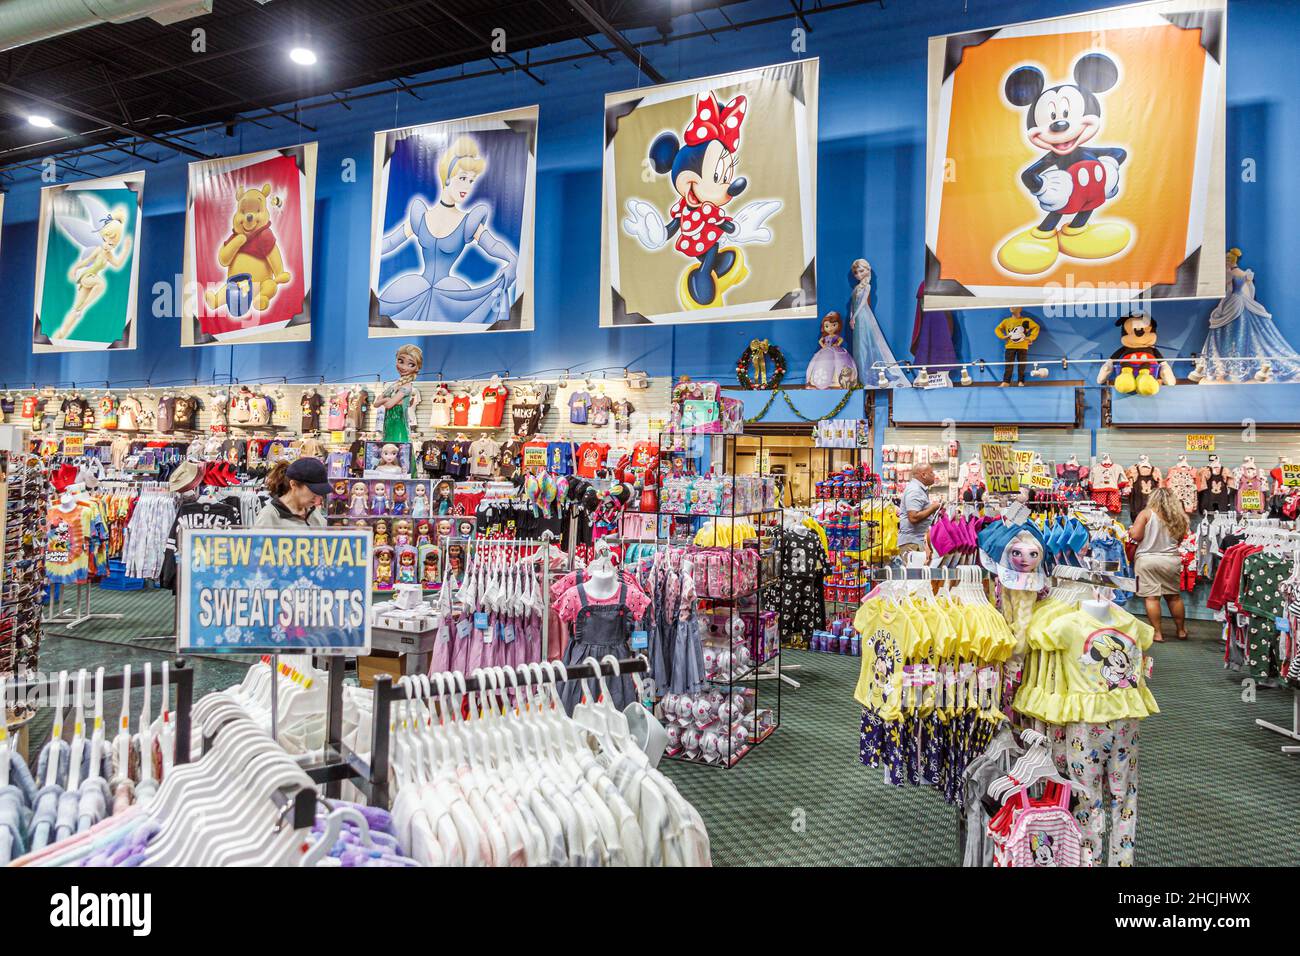 Orlando Florida South Apopka Vineland Road Bargain World Gift Shop souvenirs objets de collection à l'intérieur de bannières de personnages Disney Banque D'Images